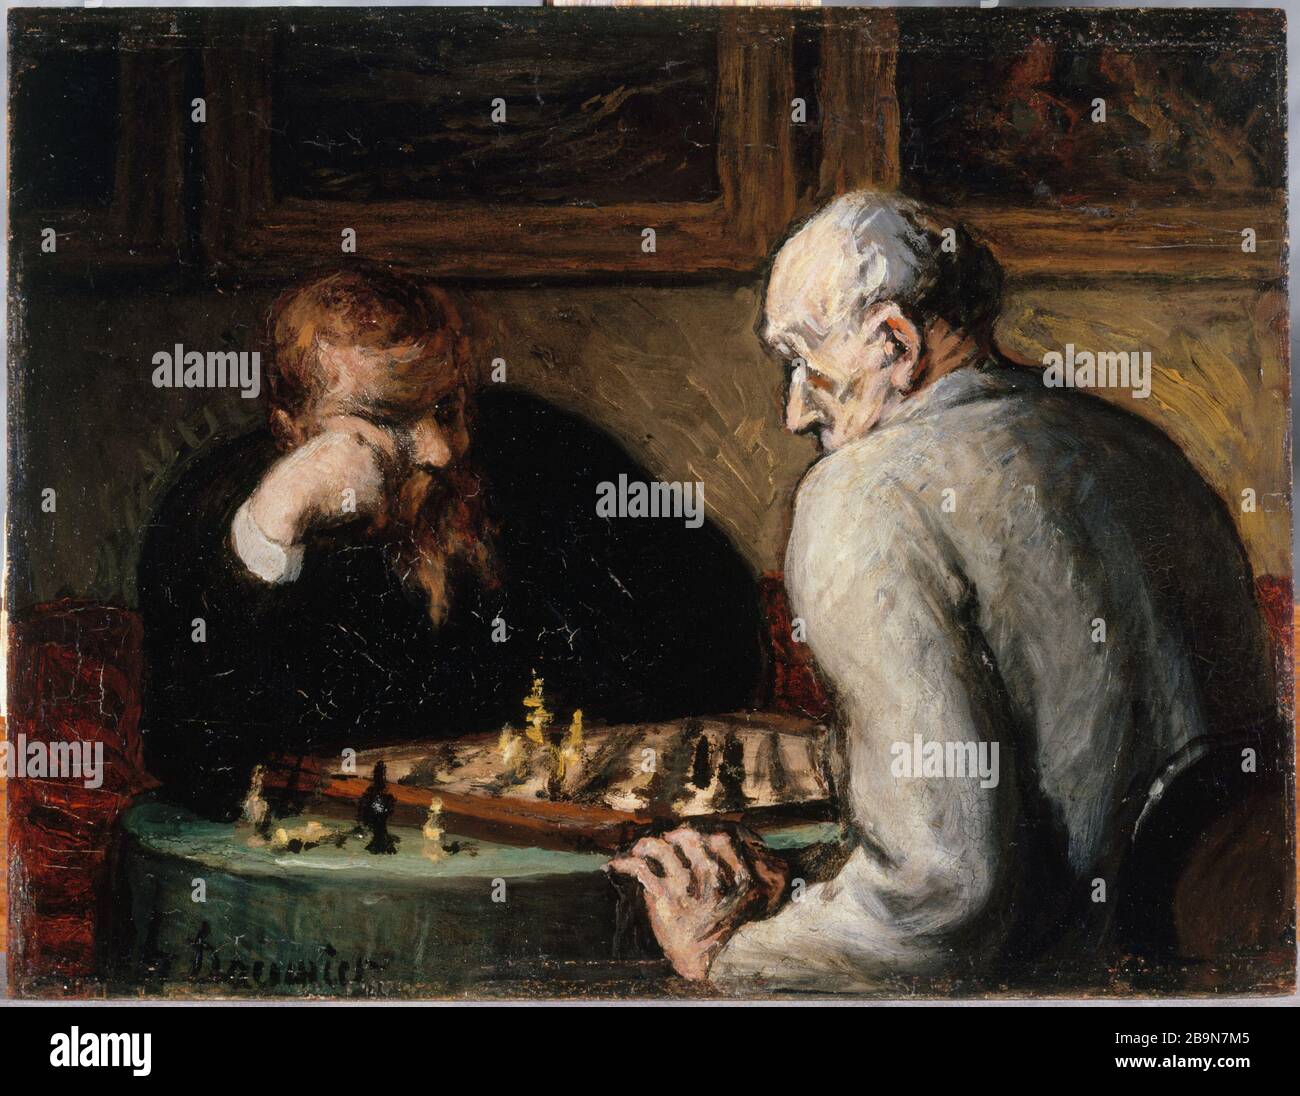 Scacchi Honoré Daumier (1808-1879). Joueurs d'échecs, vers 1863. Musée des Beaux-Arts de la Ville de Paris, Petit Palais. Foto Stock